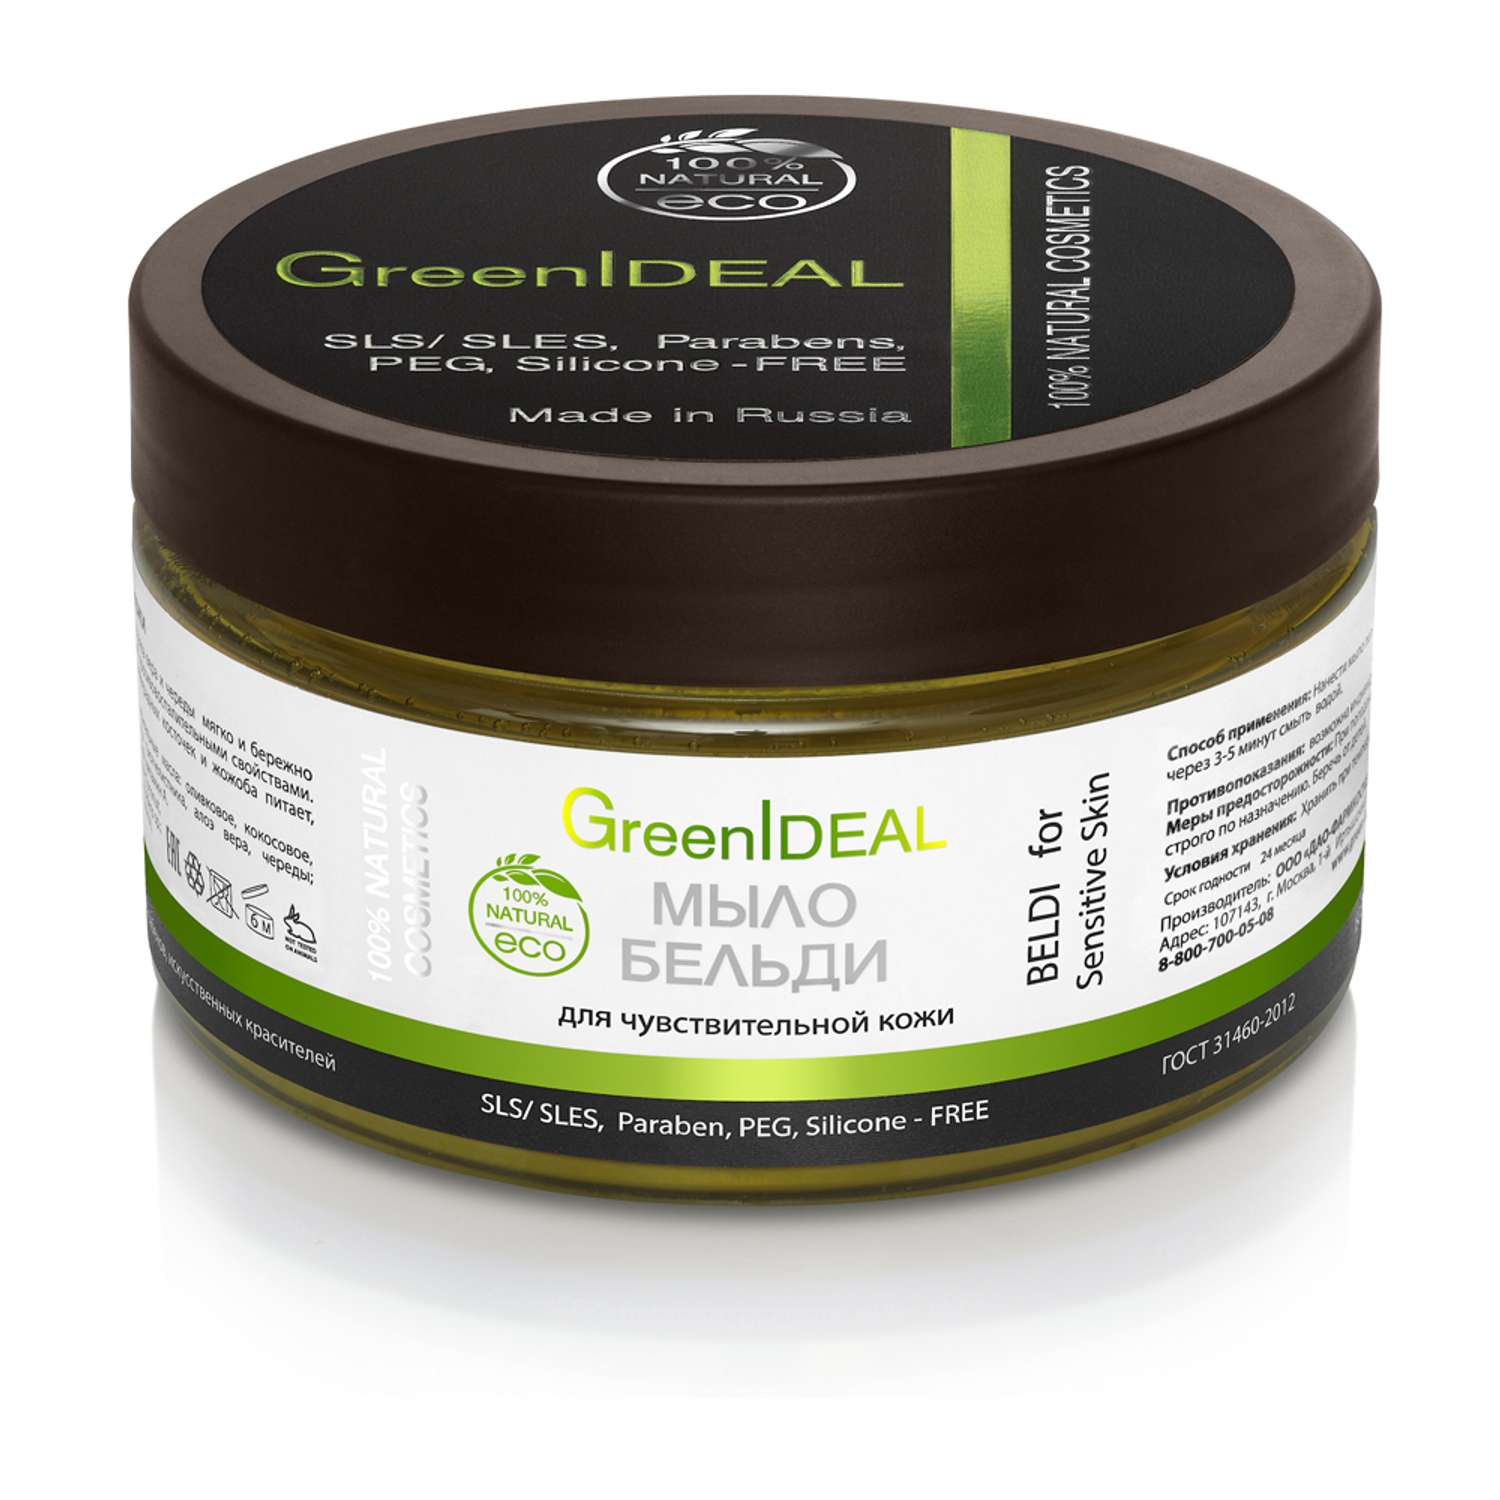 Мыло GreenIDEAL Бельди для чувствительной кожи 13006 - фото 1